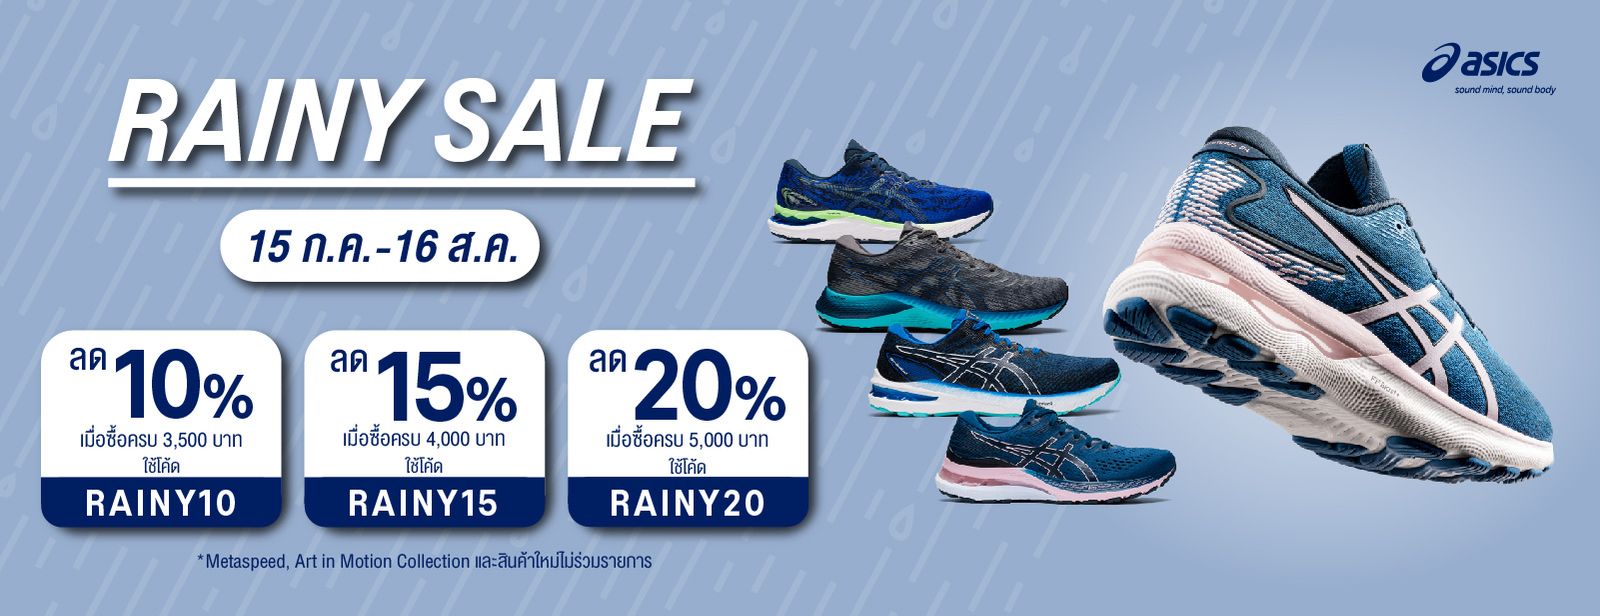 Rainy Sale